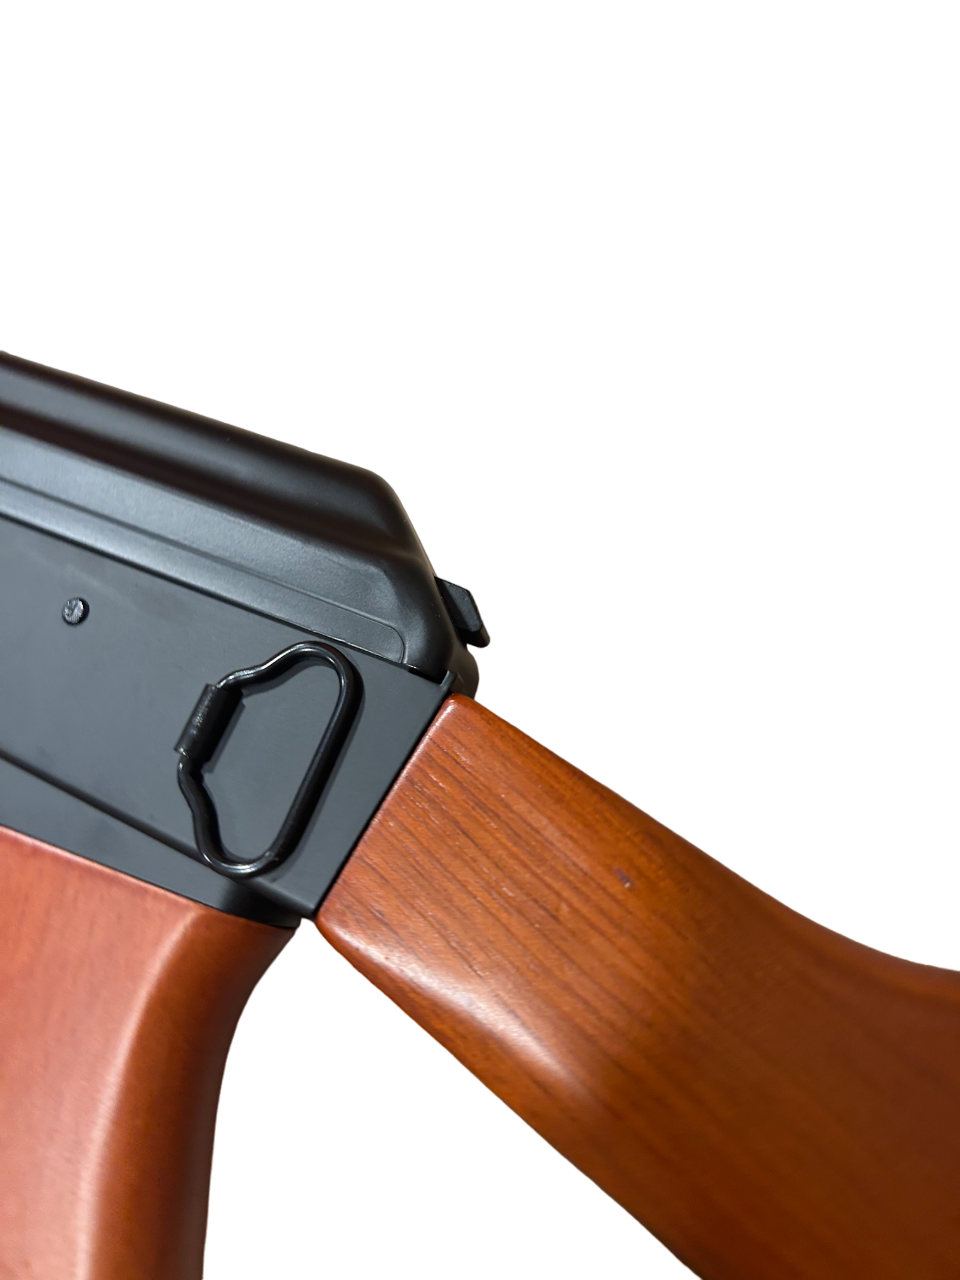 Huntsman Arms .177/4.5mm AK47 Rifle (Co2 Powered – Black)